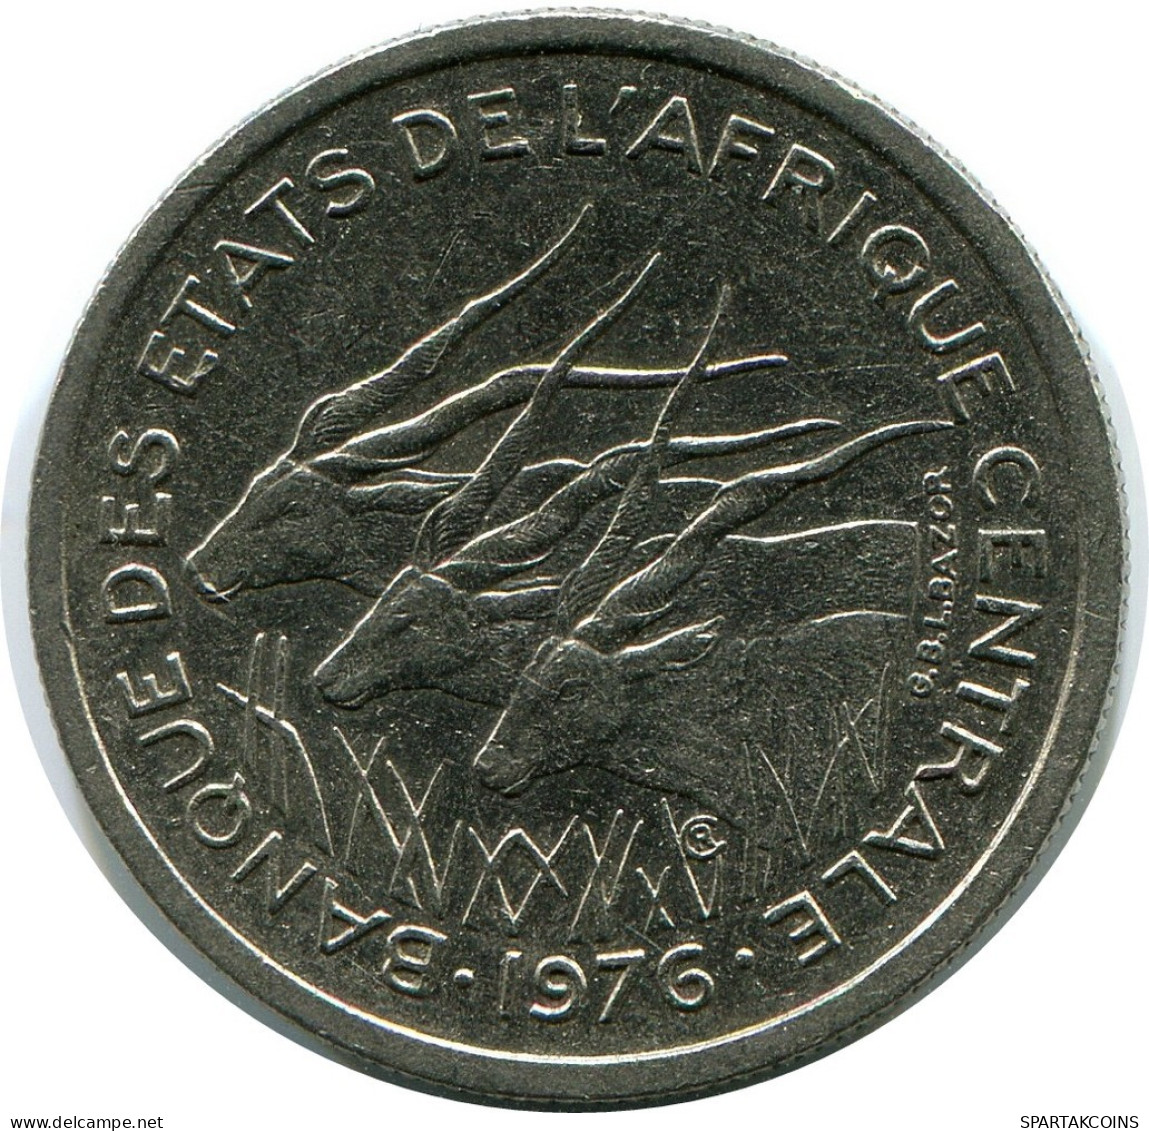 50 FRANCS CFA 1976 CENTRAL AFRICAN STATES (BEAC) Münze #AP867.D.A - Centrafricaine (République)